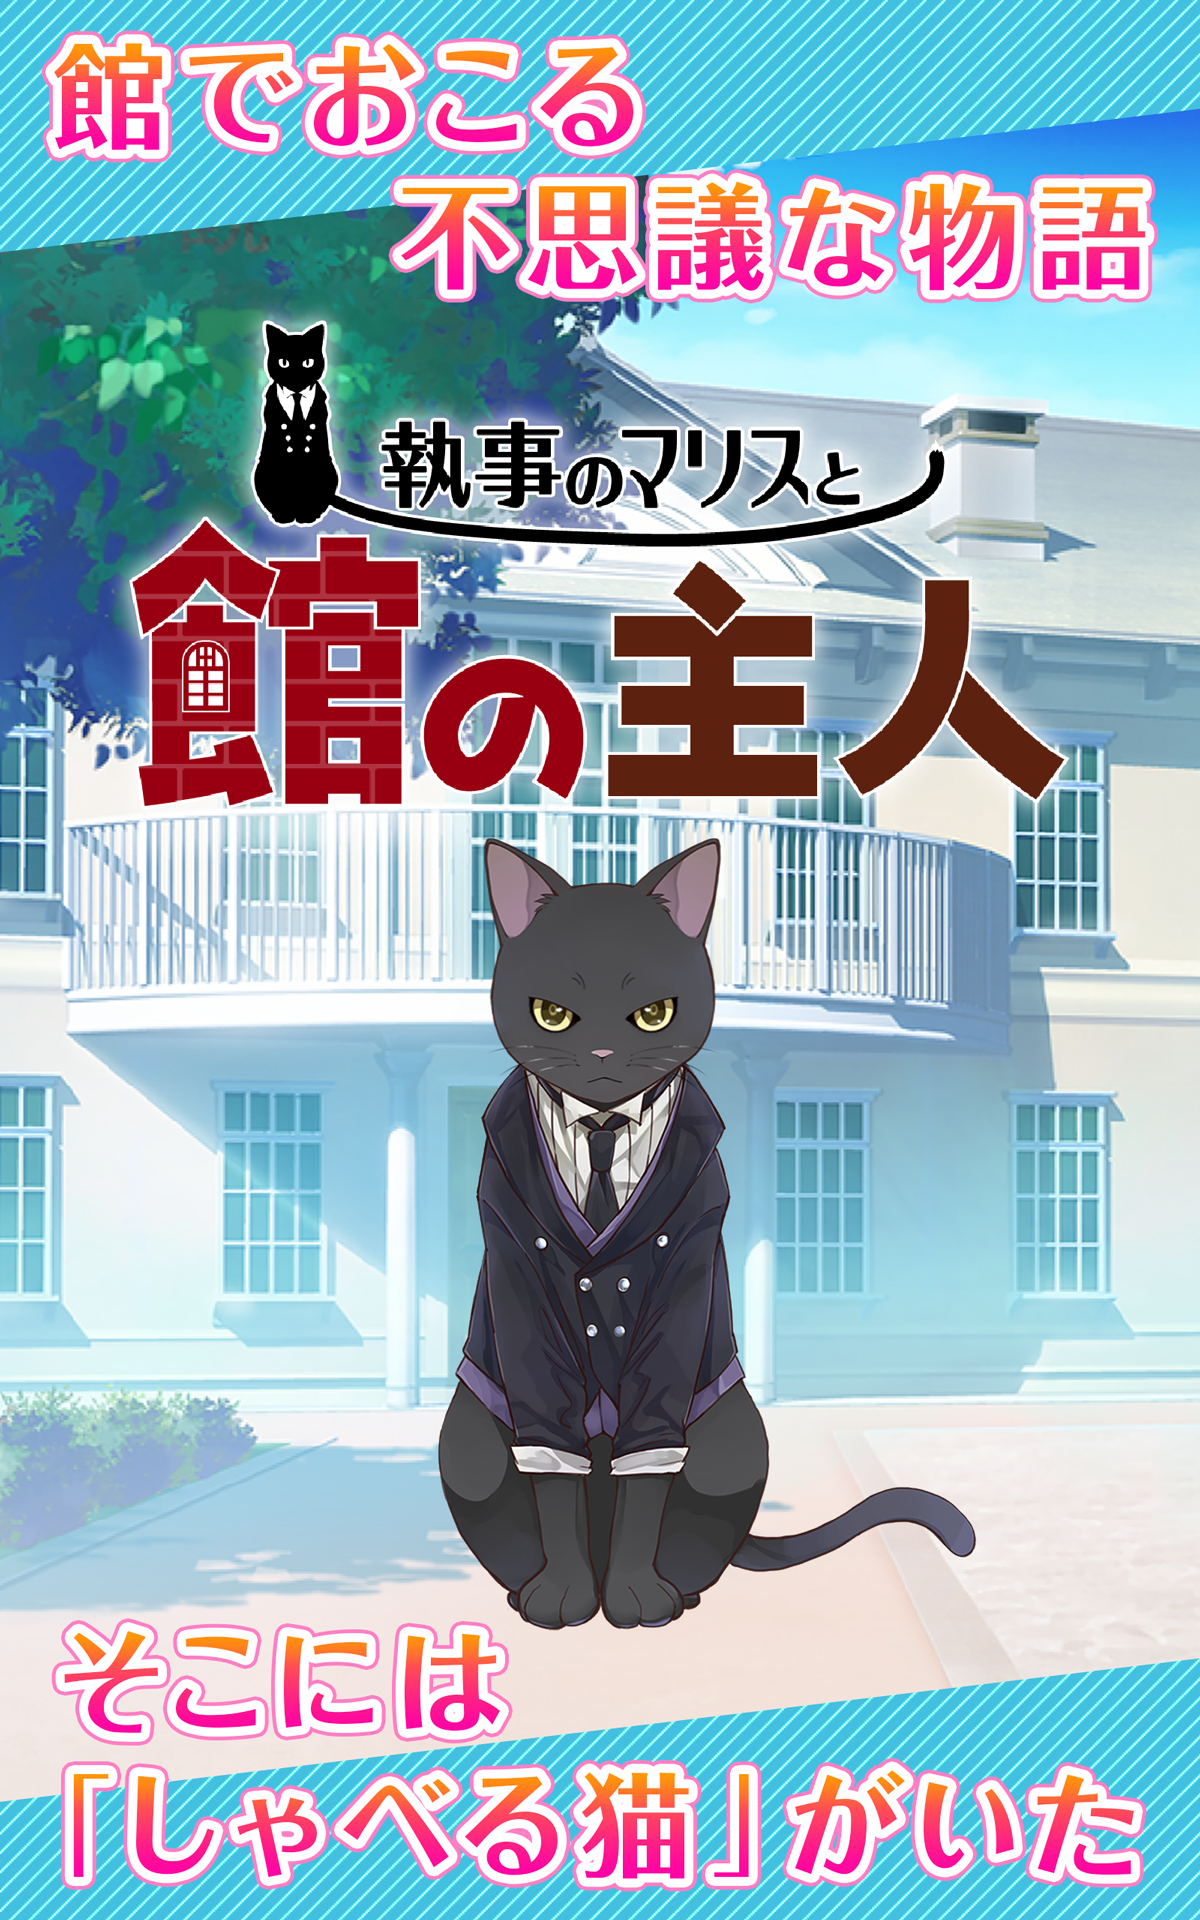 Screenshot 1 of Ein Katzen-Butler zieht ein Dienstmädchen auf - Ein Rätsel-Katzenspiel - Maris der Butler und der Besitzer des Herrenhauses 1.0.5